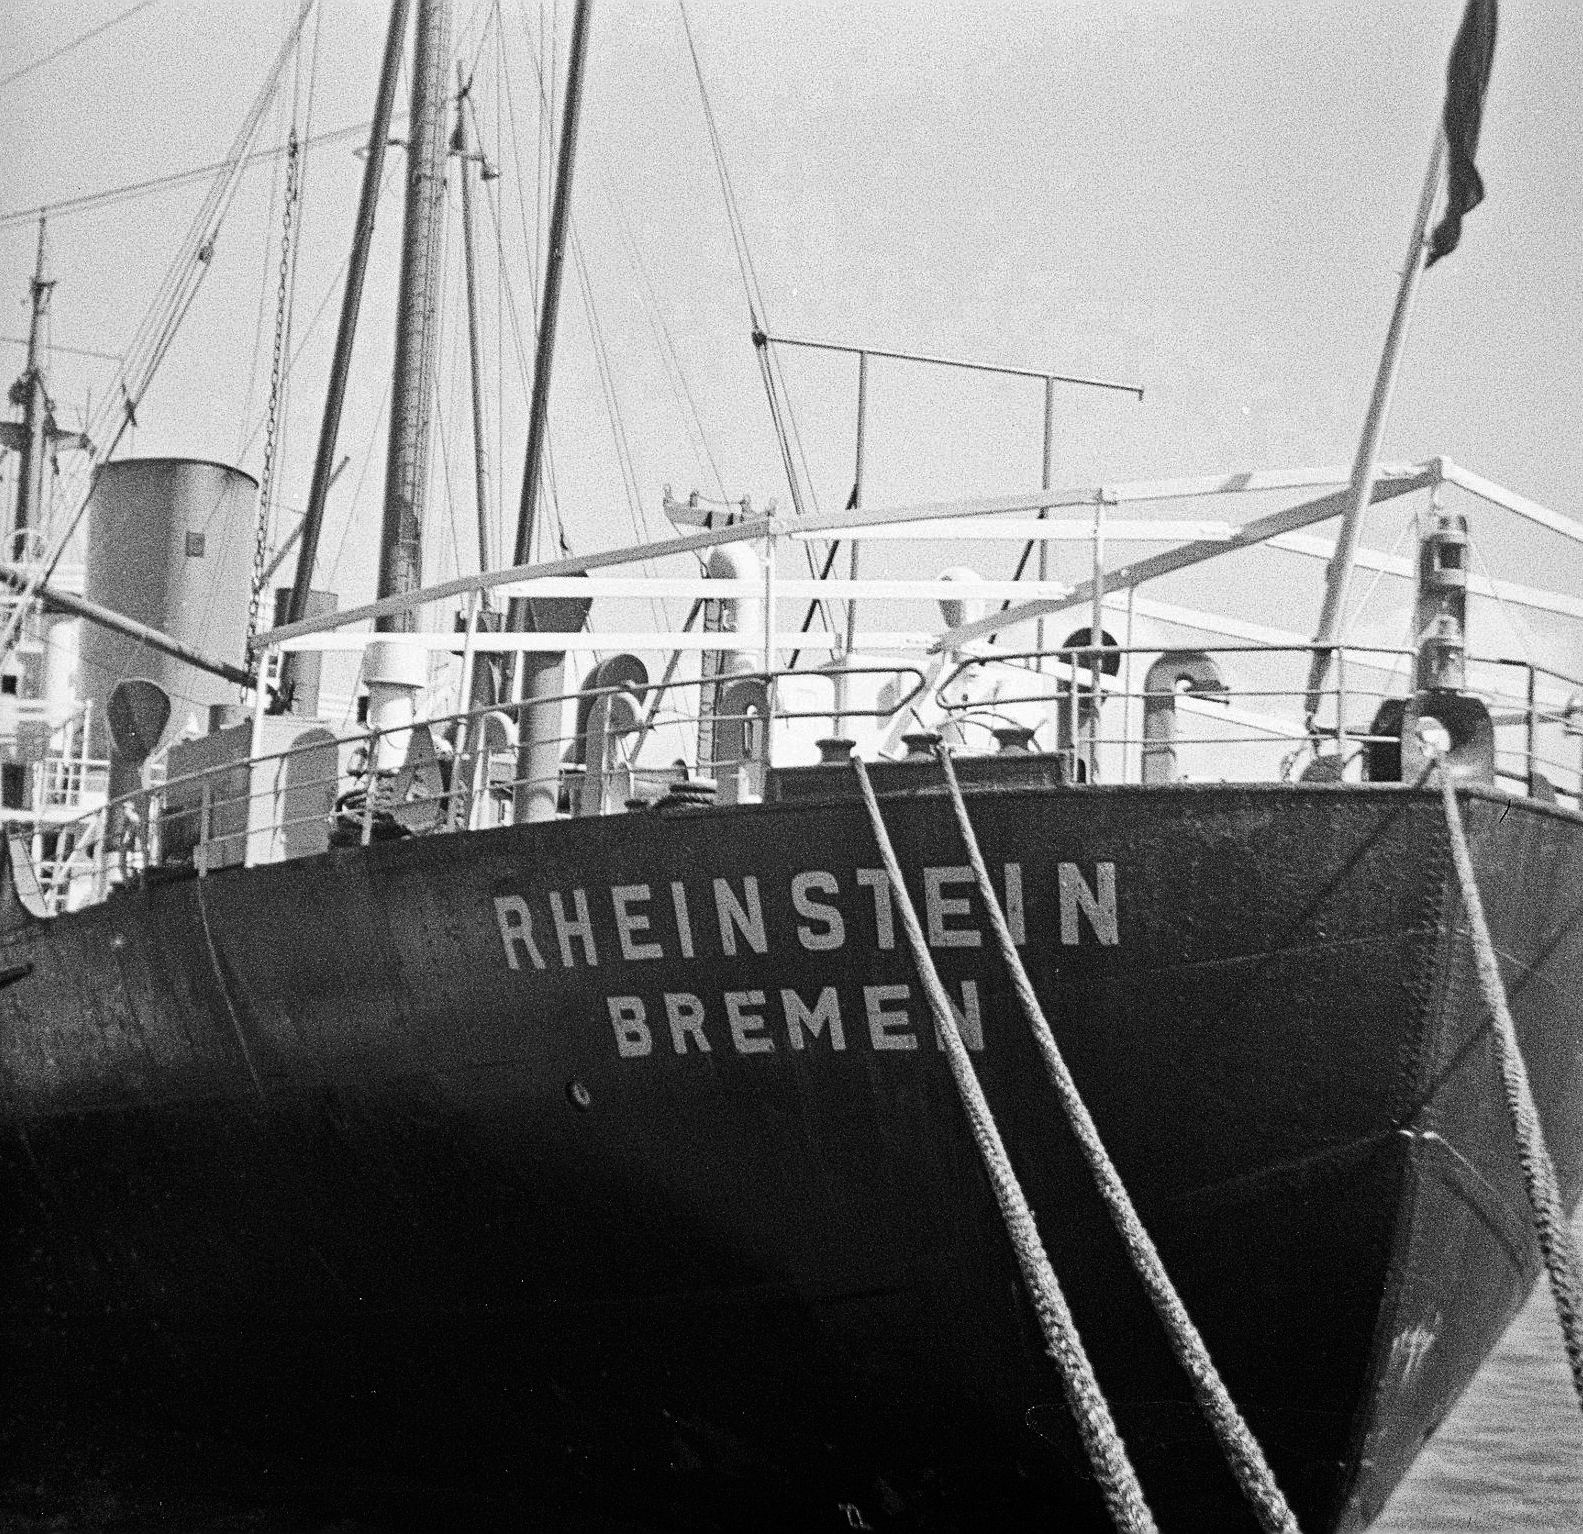 Foto von der RHEINSTEIN BREMEN im Emder Außenhafen aus dem Jahr 1967. Foto: Erwin Thomasius.